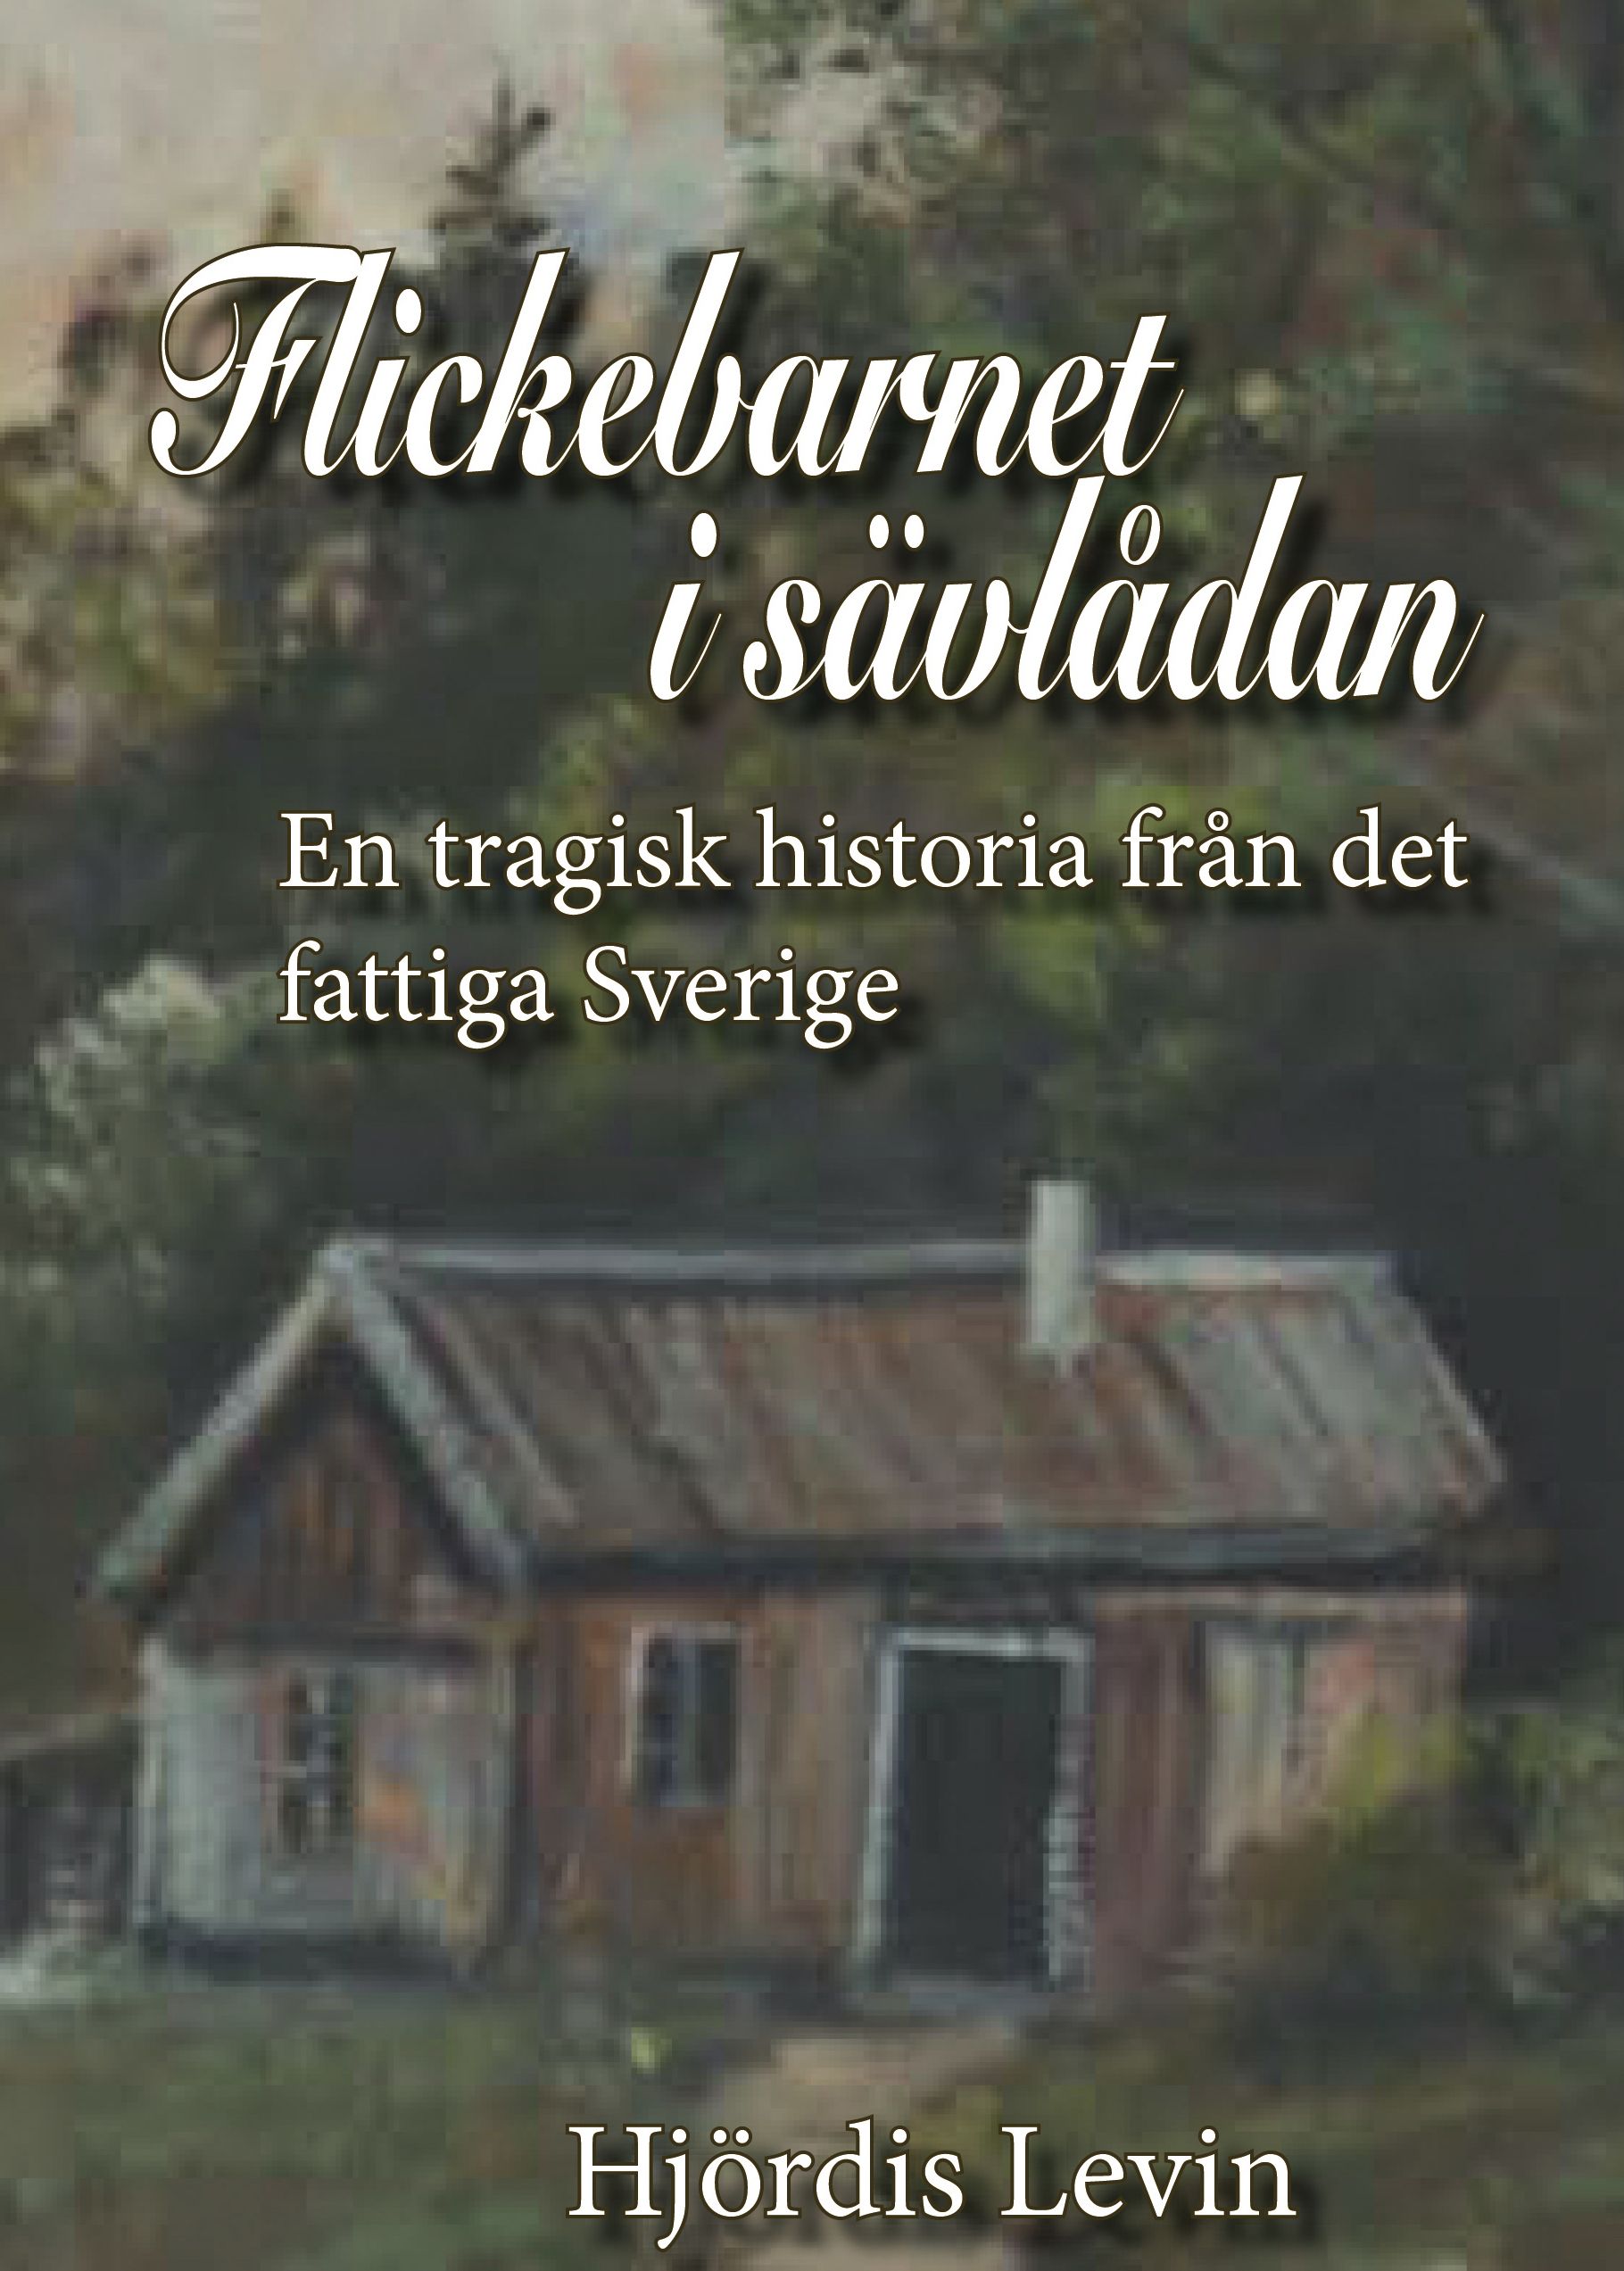 Flickebarnet i sävlådan - en tragisk historia från det fattiga Sverige, eBook by Hjördis Levin